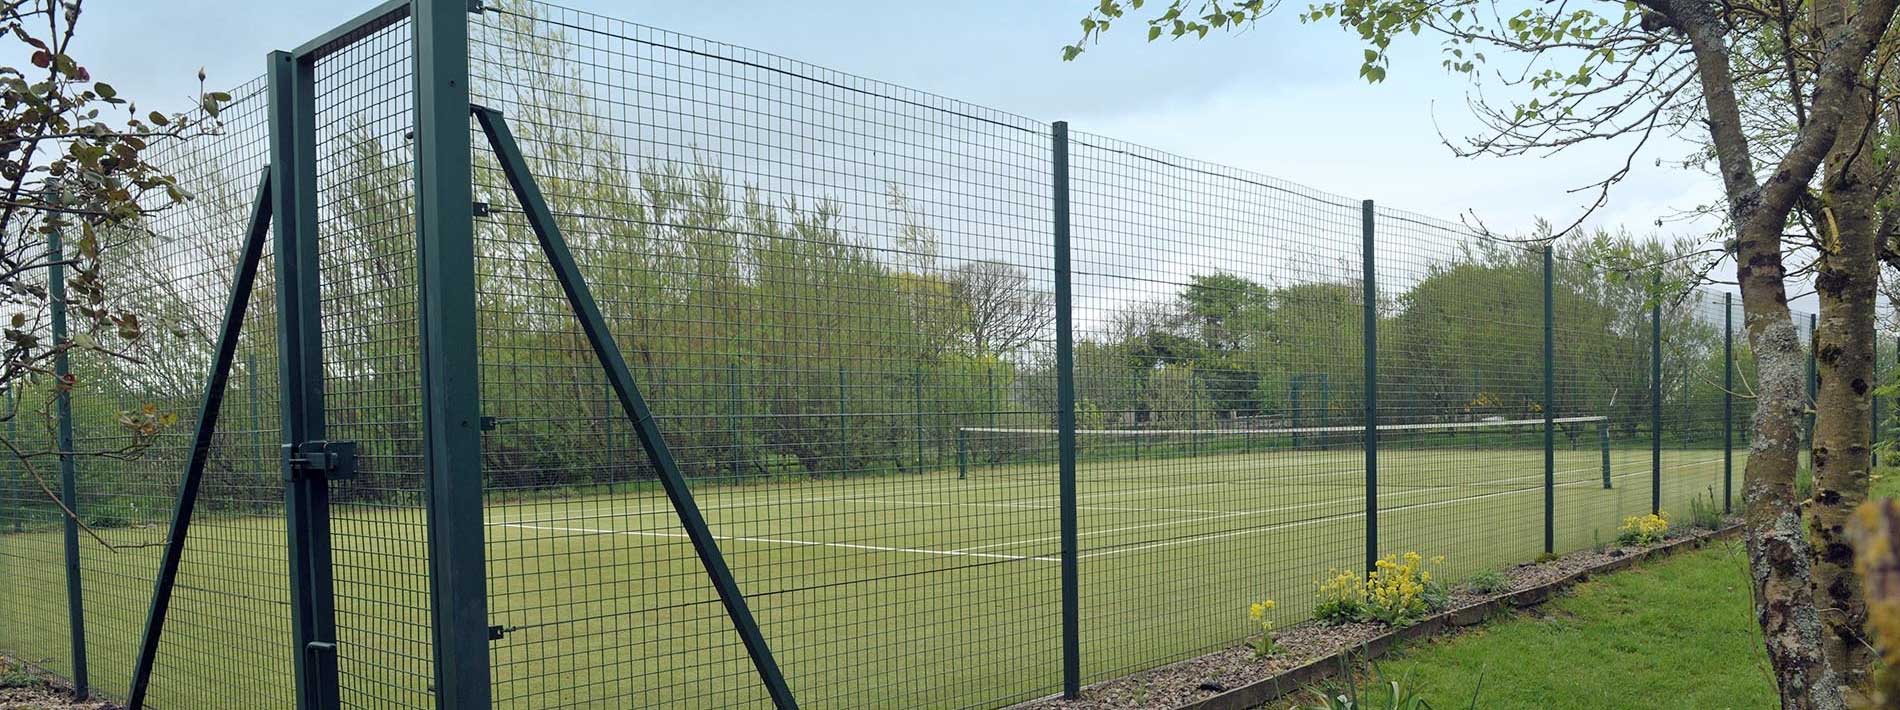 tennis-court-slider